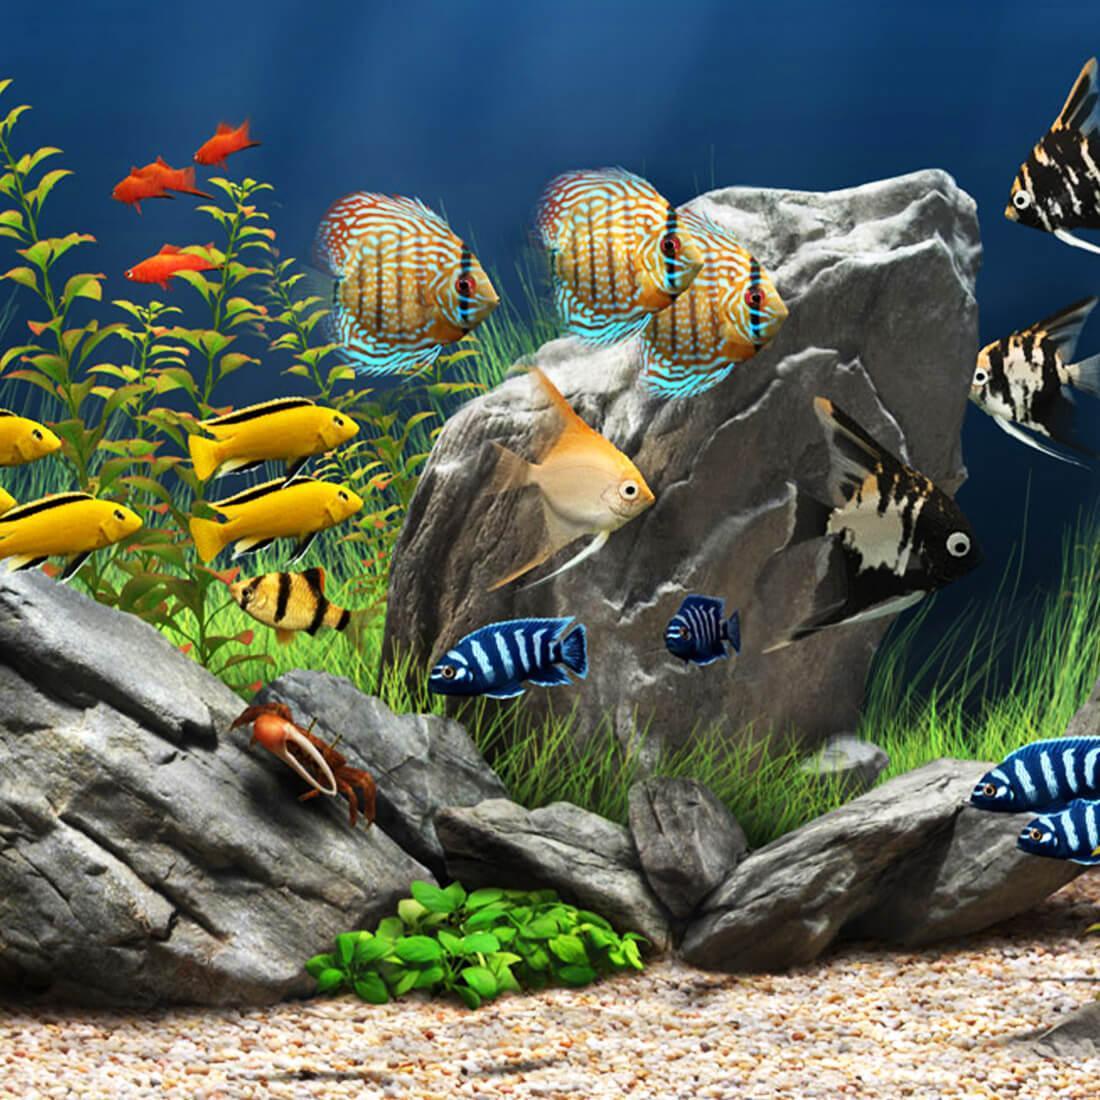  Aquarien Hintergrundbild 1100x1100. Aquarium Hintergrundbilder APK für Android herunterladen